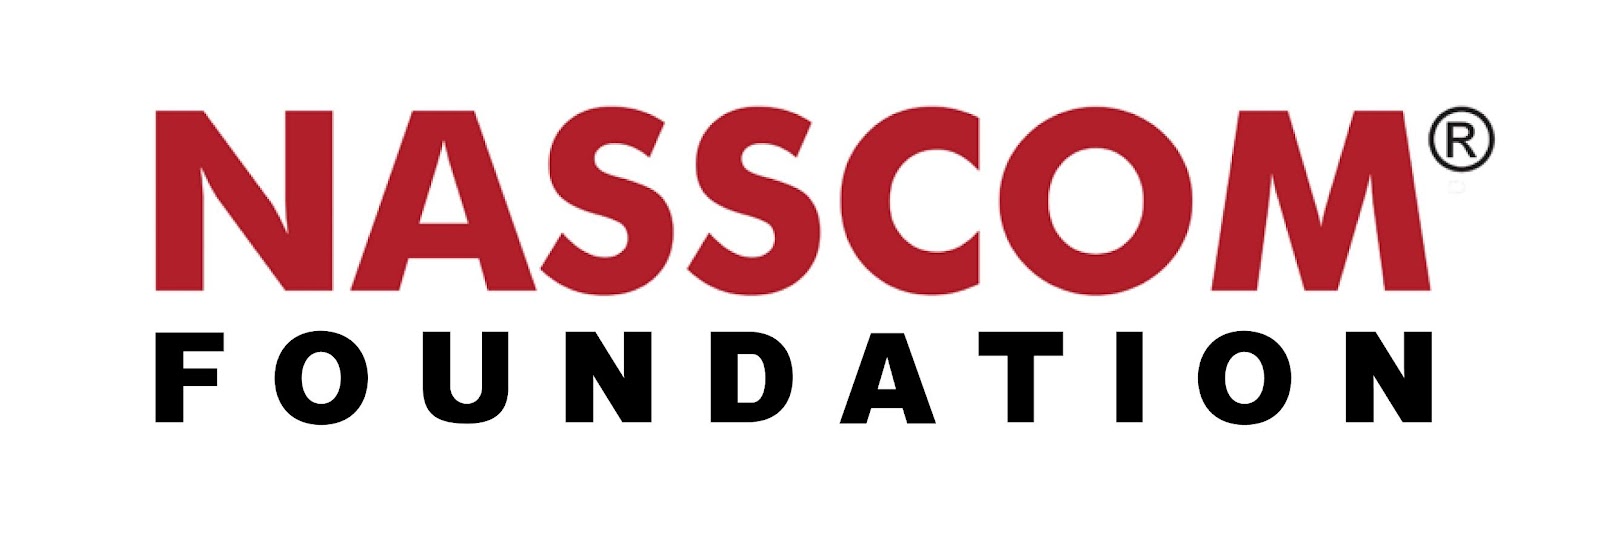 NASSCOM-Foundation-Logo